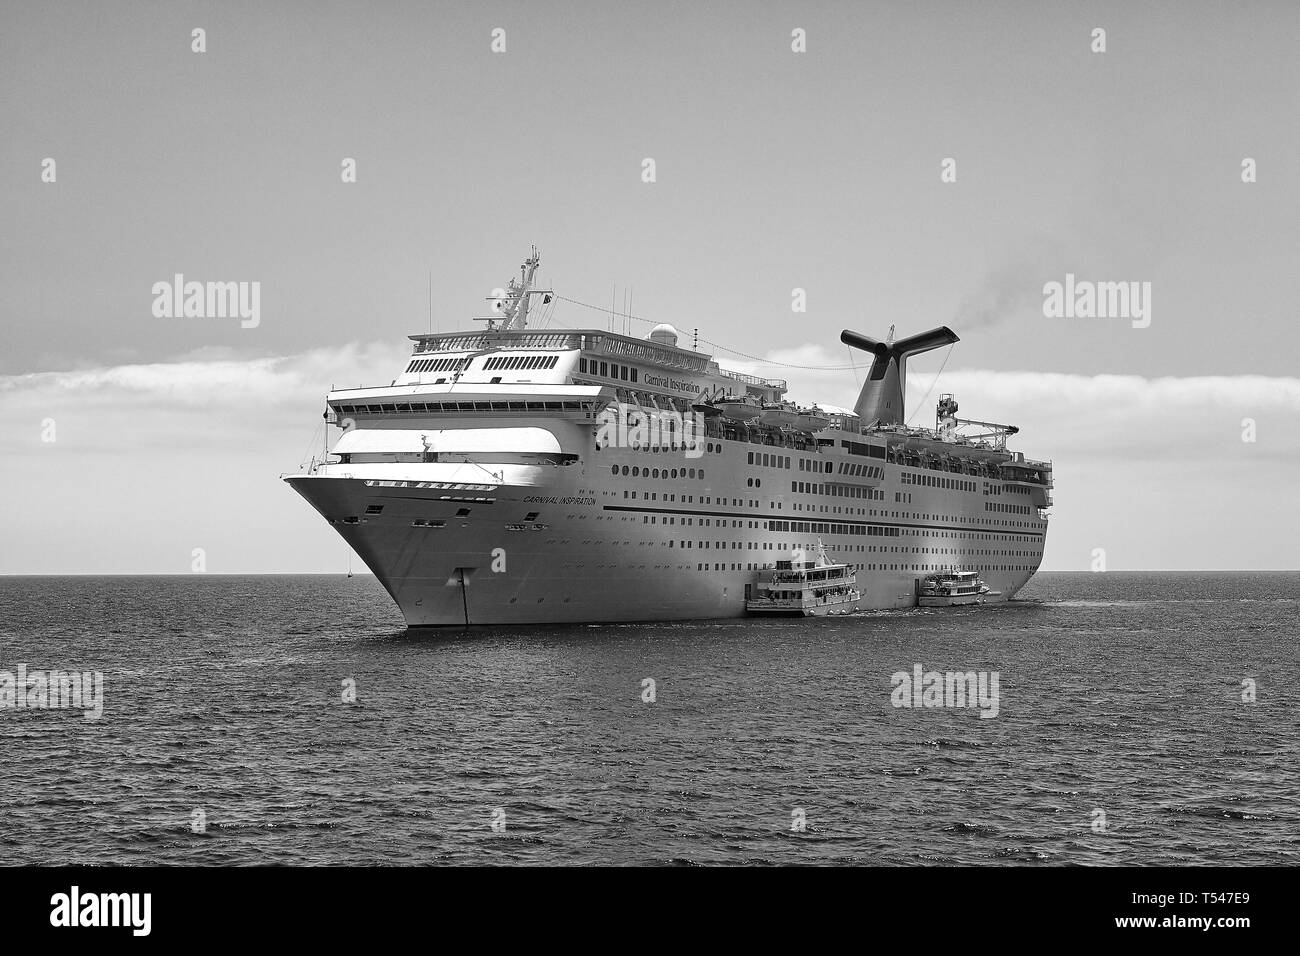 Photo en noir et blanc de la Carnival Cruise Line, bateau de croisière Carnival Inspiration, ancré à Avalon, Catalina Island, Californie, USA. Banque D'Images